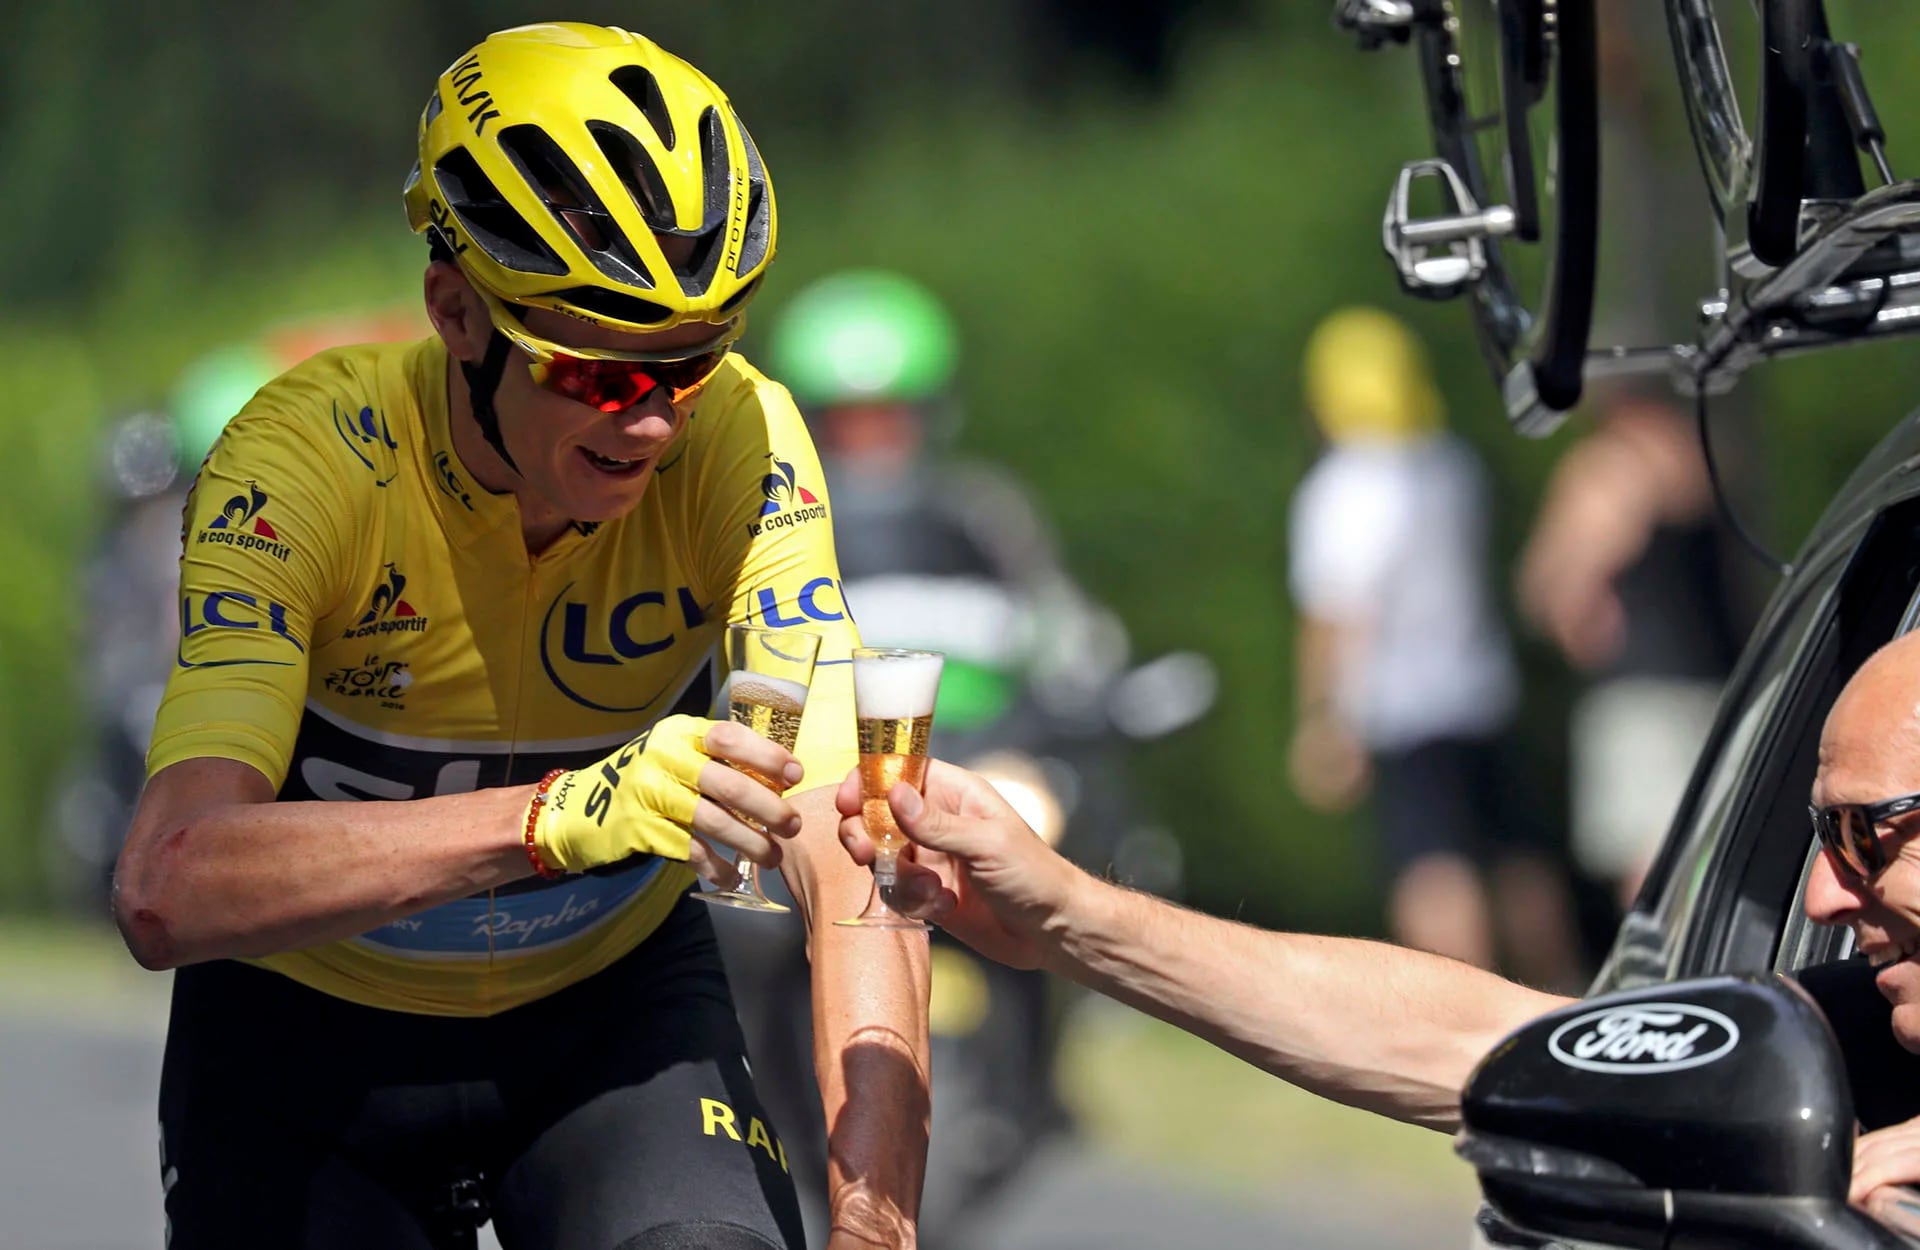 El champagne, otra bebida elegida por el campeón del Tour para festejar (Reuters)